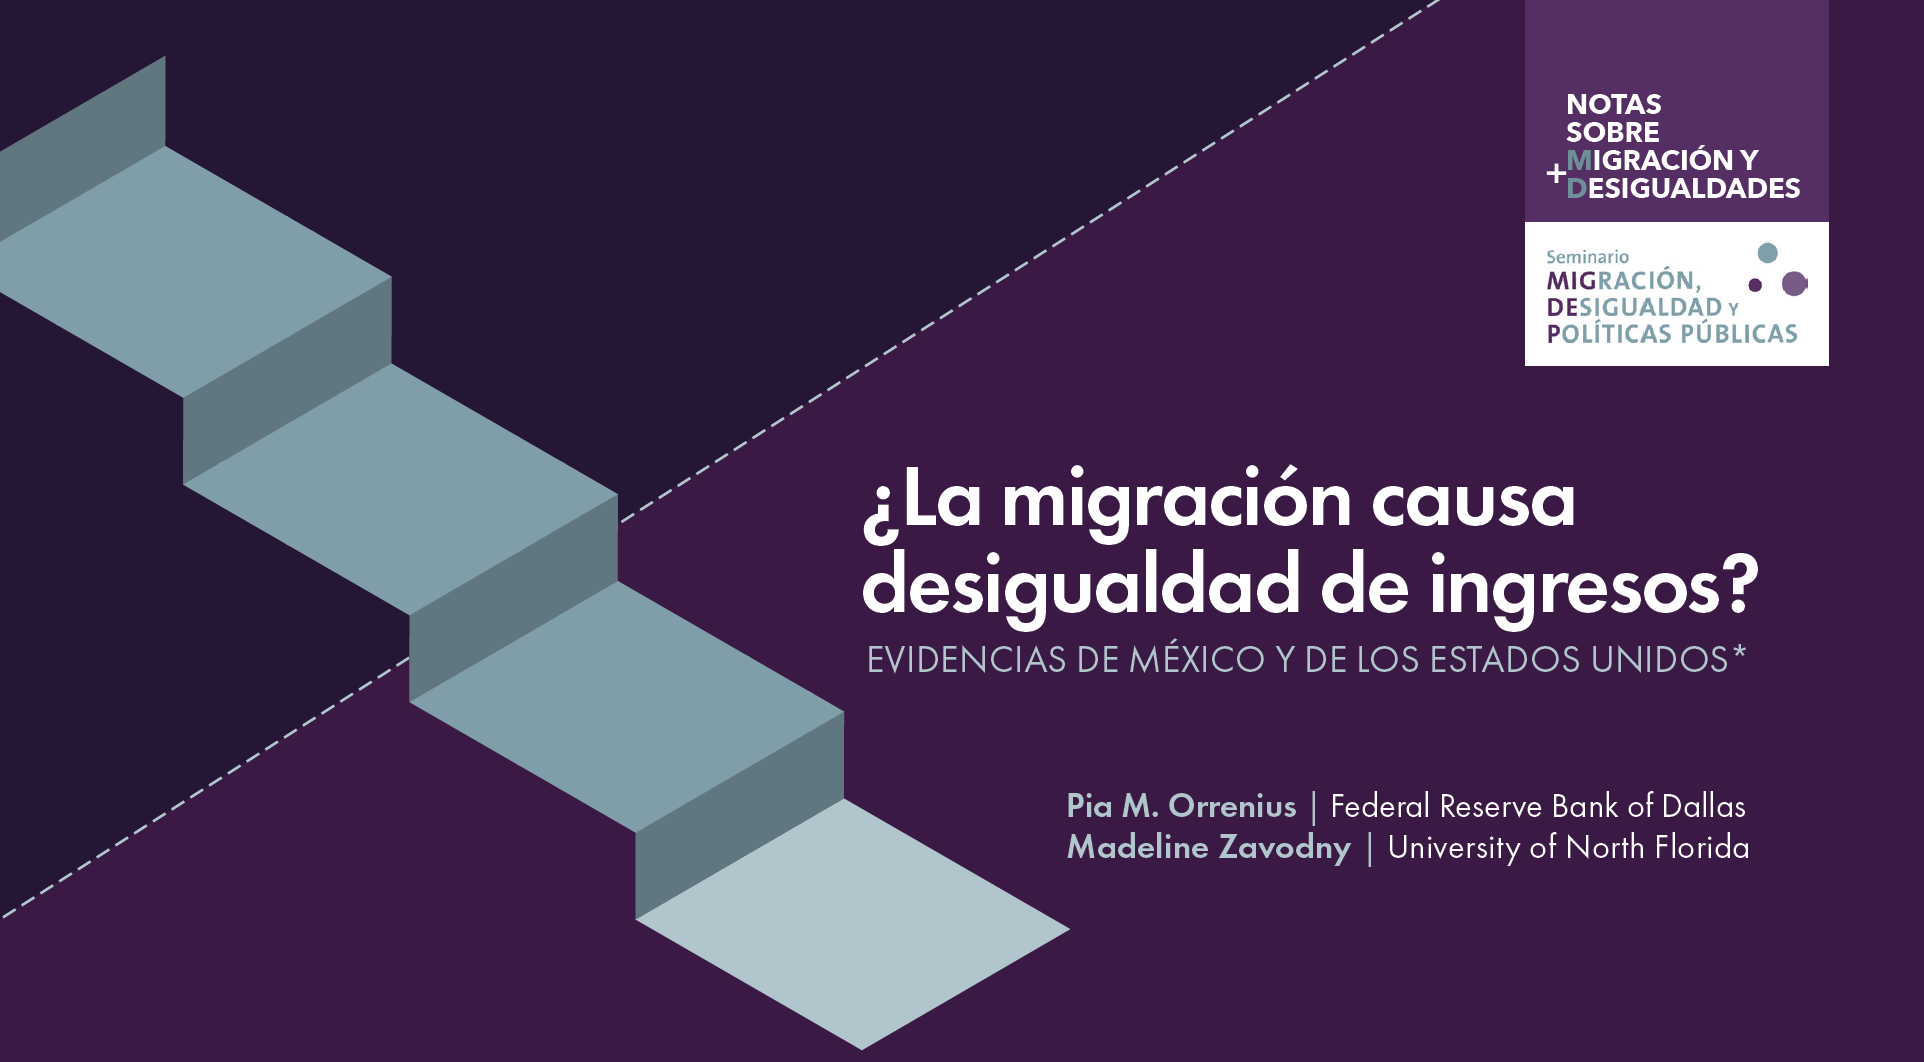 ¿La migración causa desigualdad en el ingreso? Evidencia en México y Estados Unidos